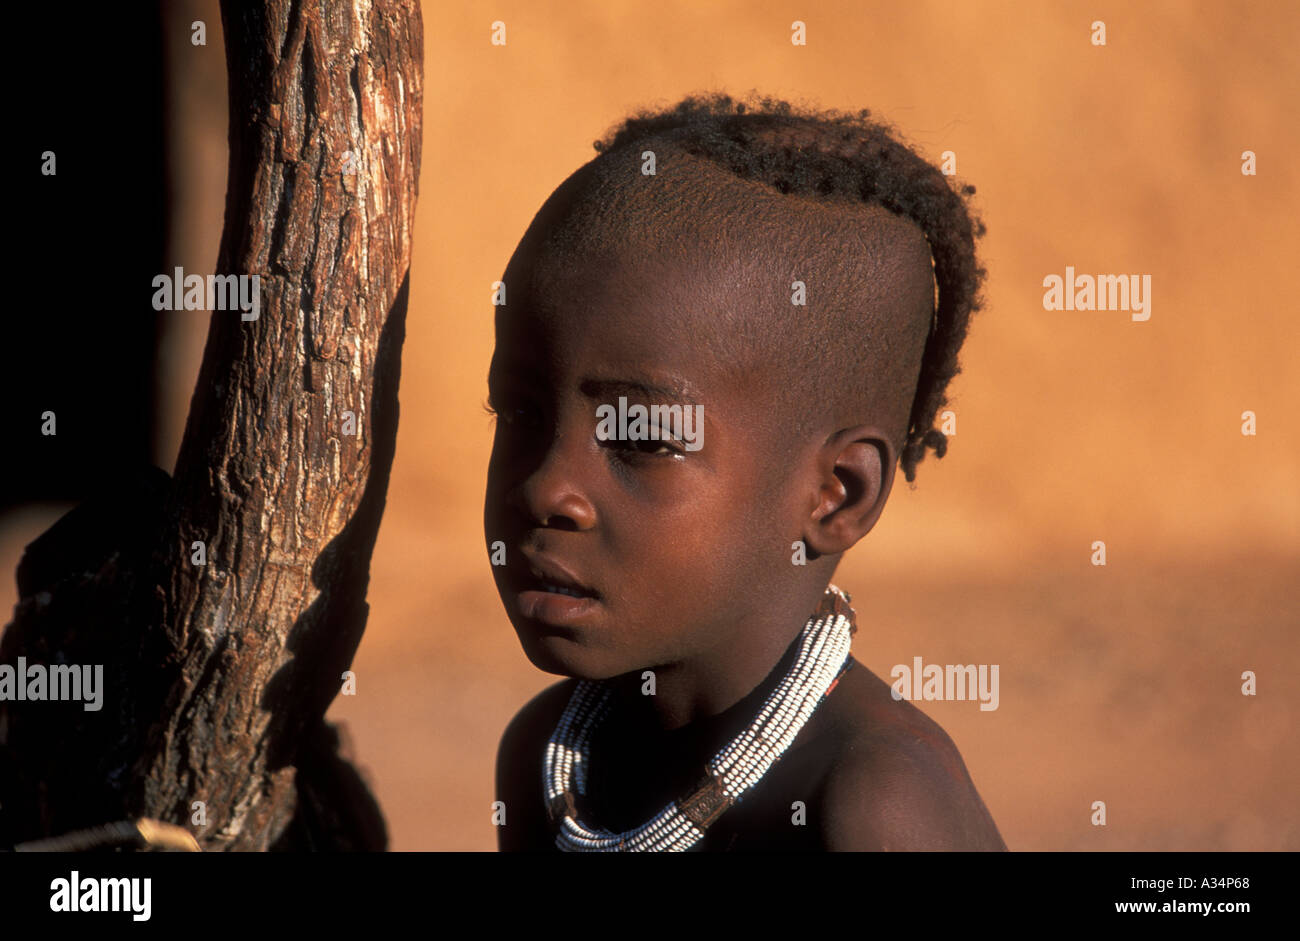 Tribu Himba portrait garçon Afrique Namibie Kaokoveld Banque D'Images